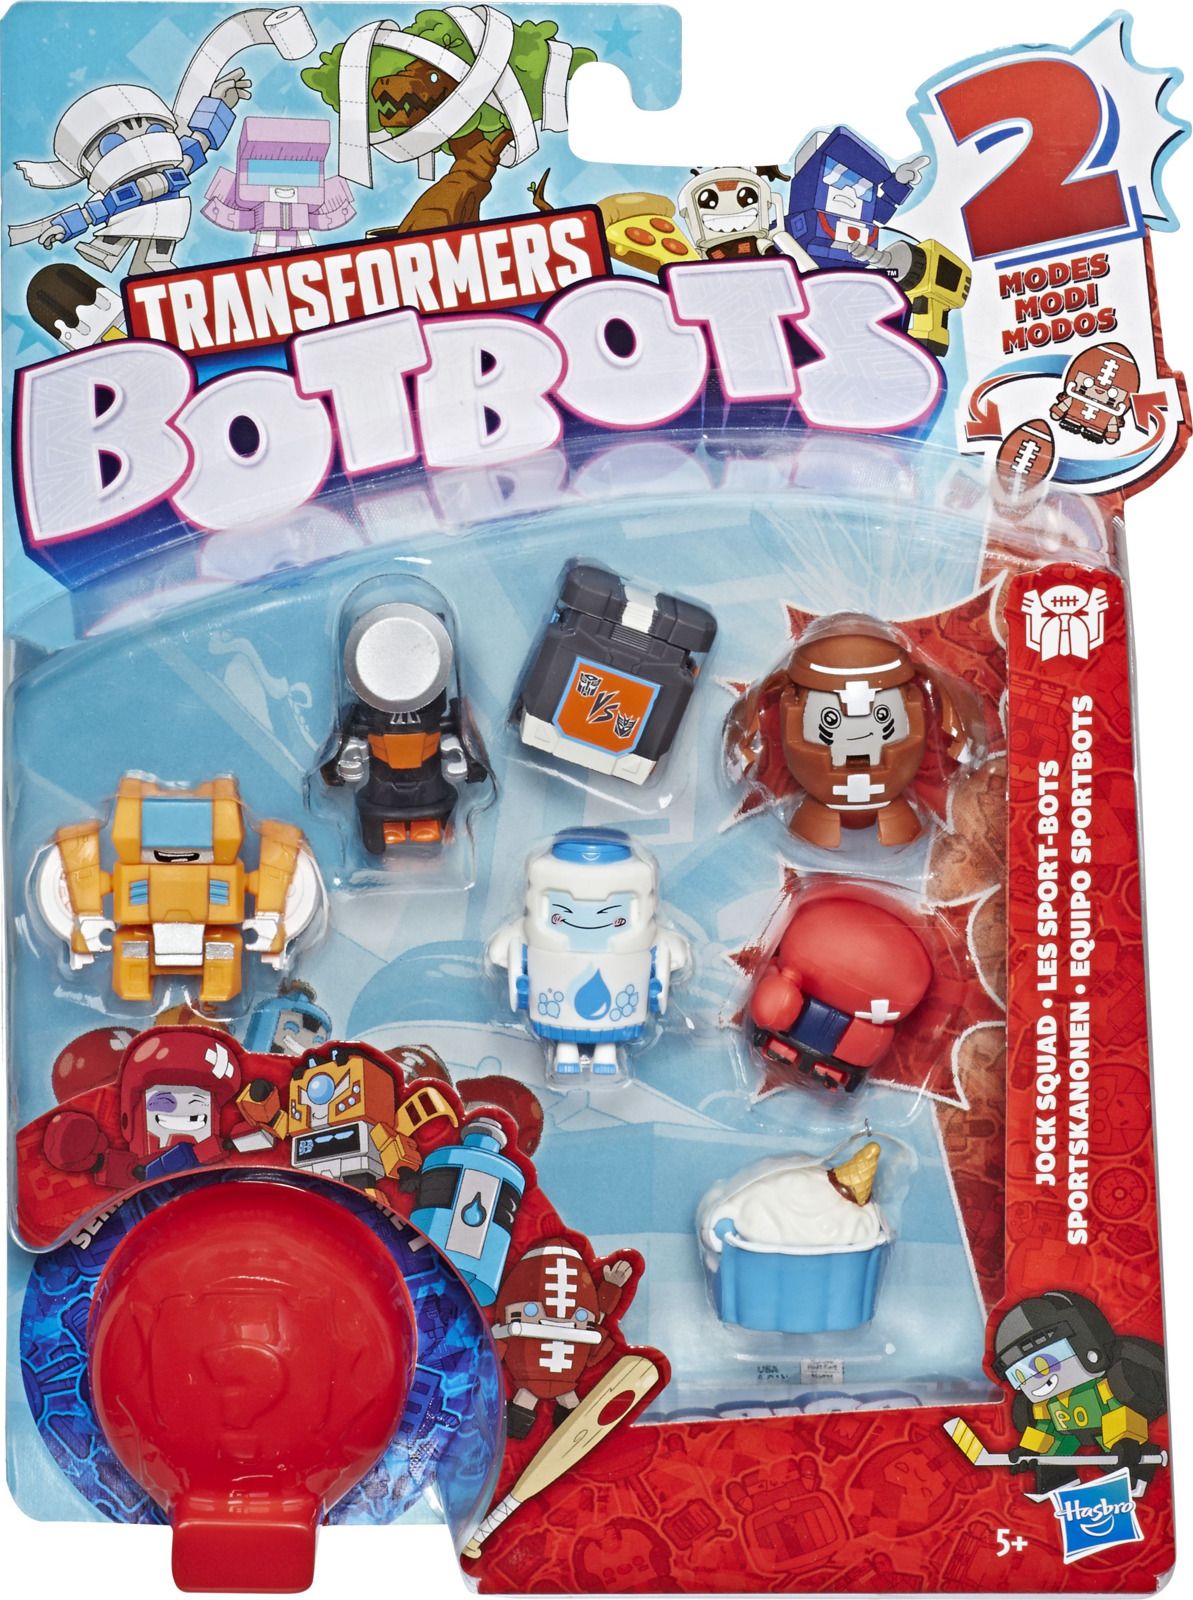   Transformers Botbots 8  , E3494EU4